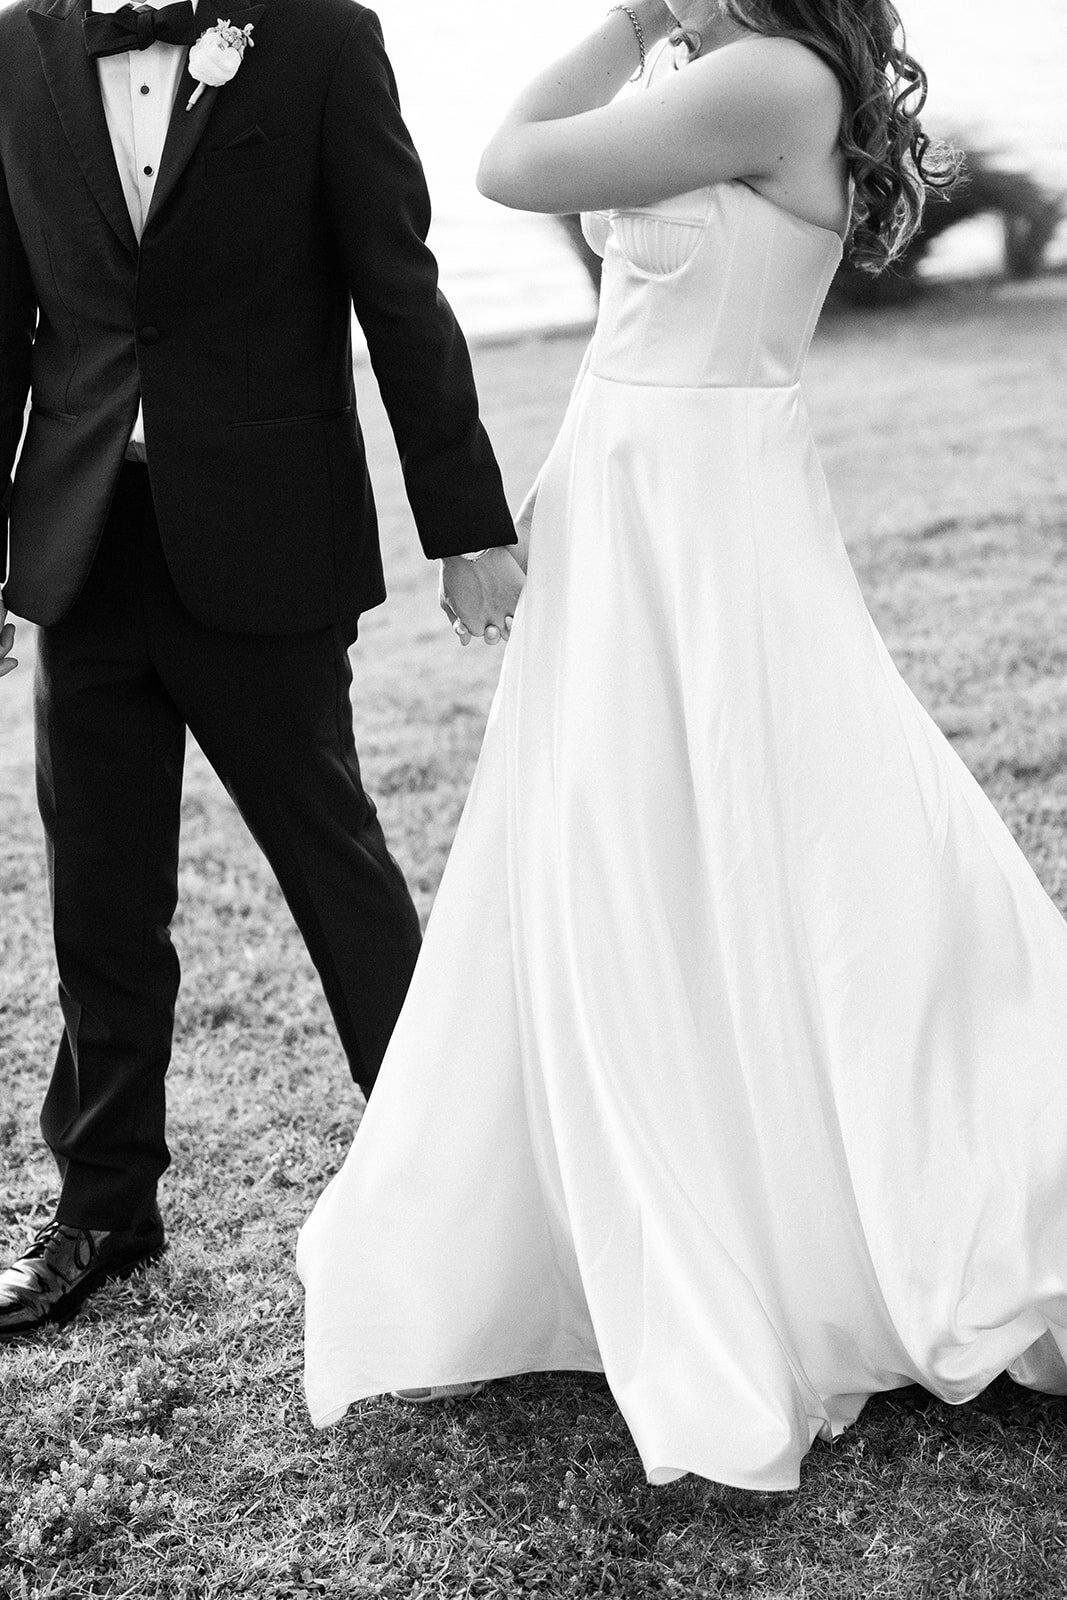 CORNELIA ZAISS PHOTOGRAPHY COURTNEY + ANDREW WEDDING 0994_websize